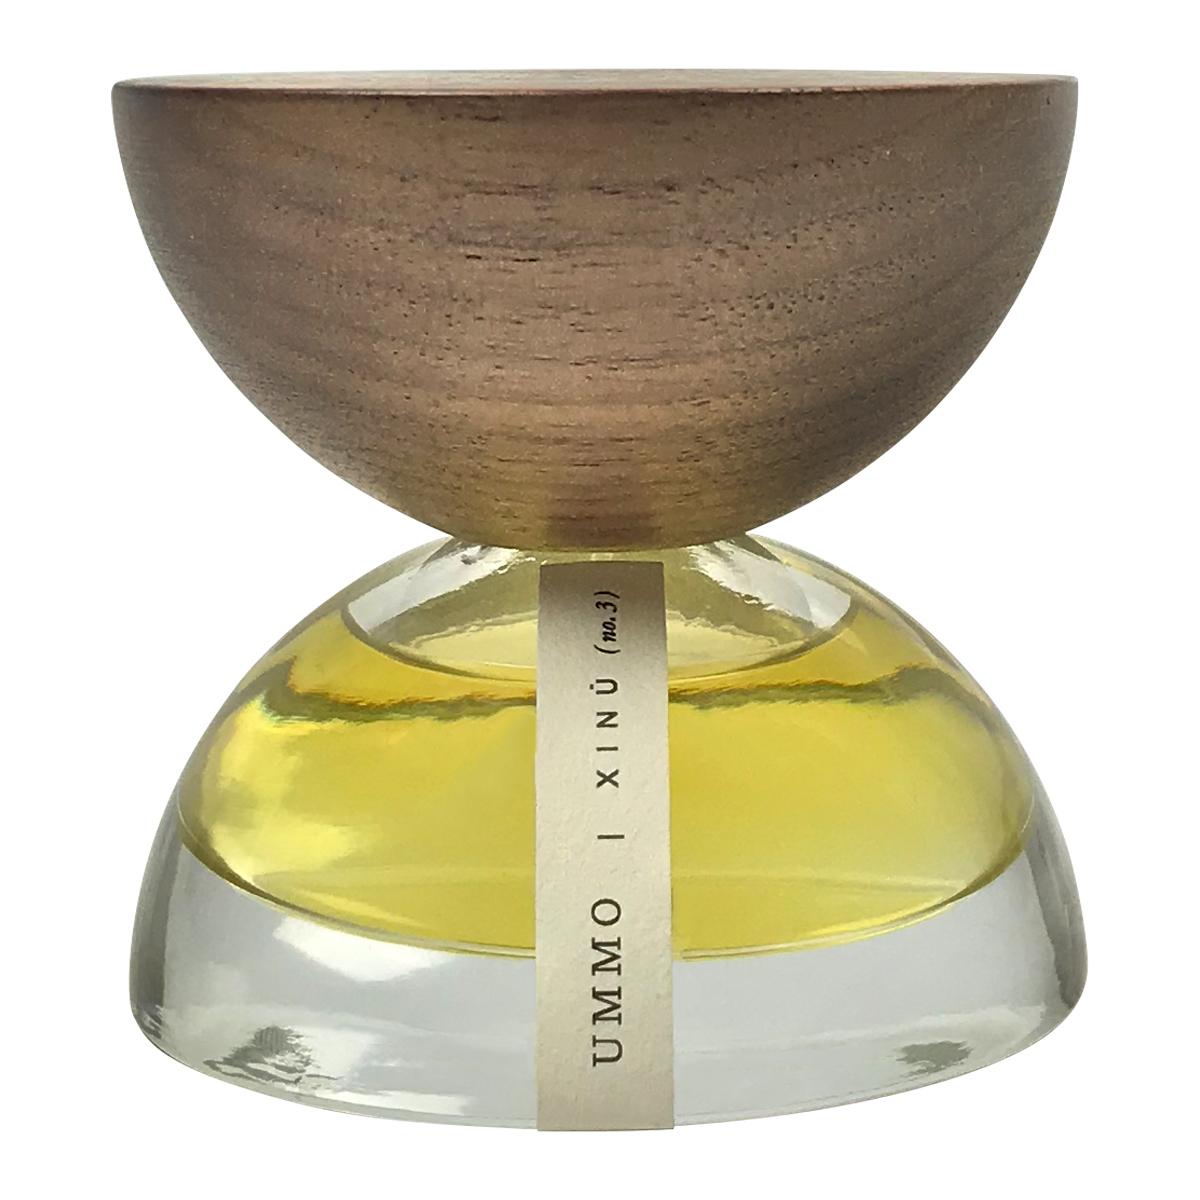 Primary image of Ummo Eau De Parfum